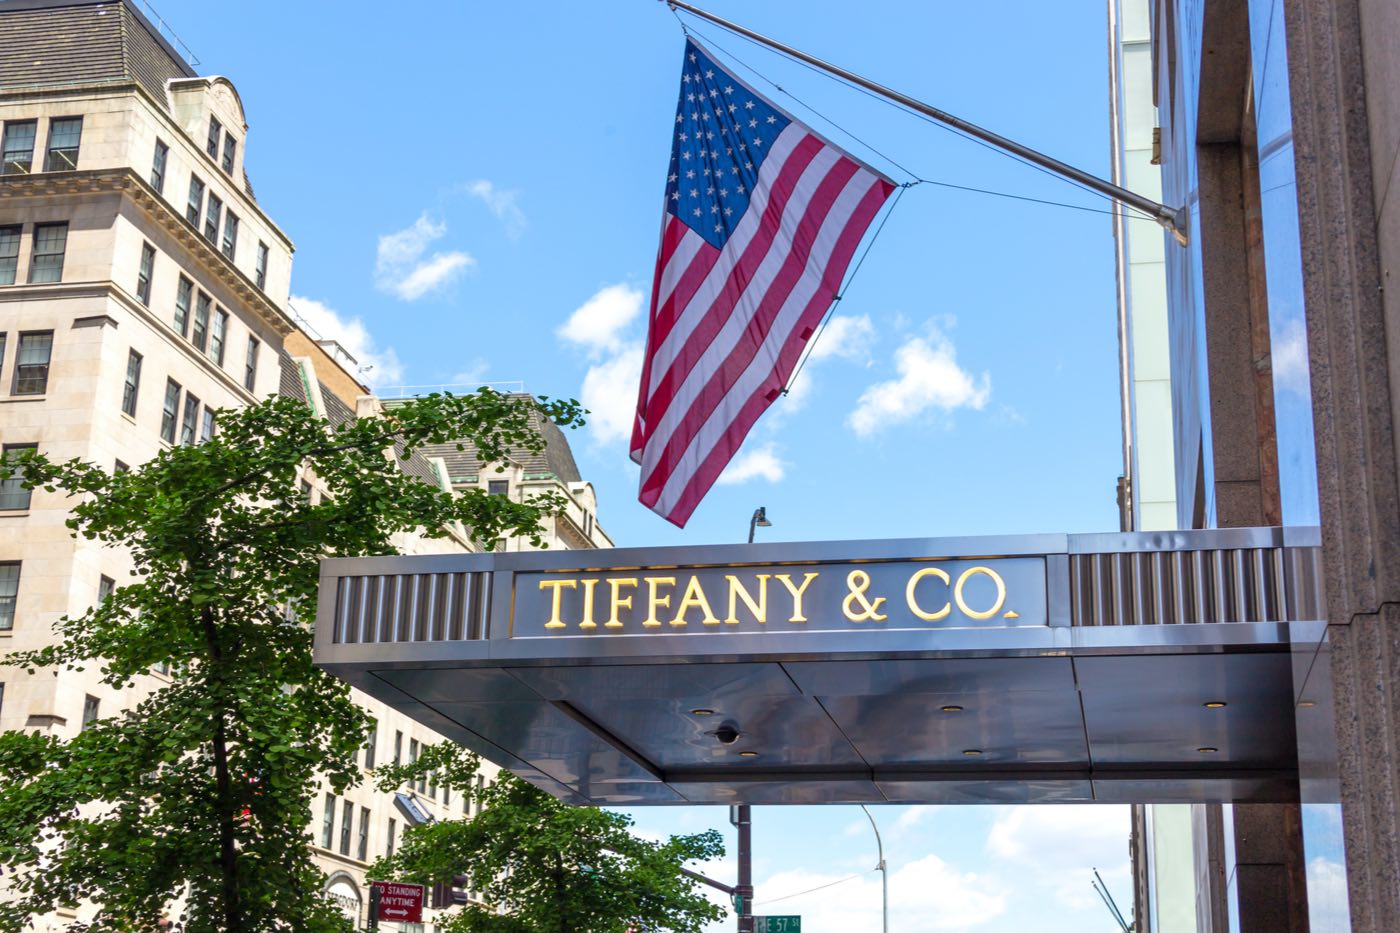 La joyería Tiffany & Co.